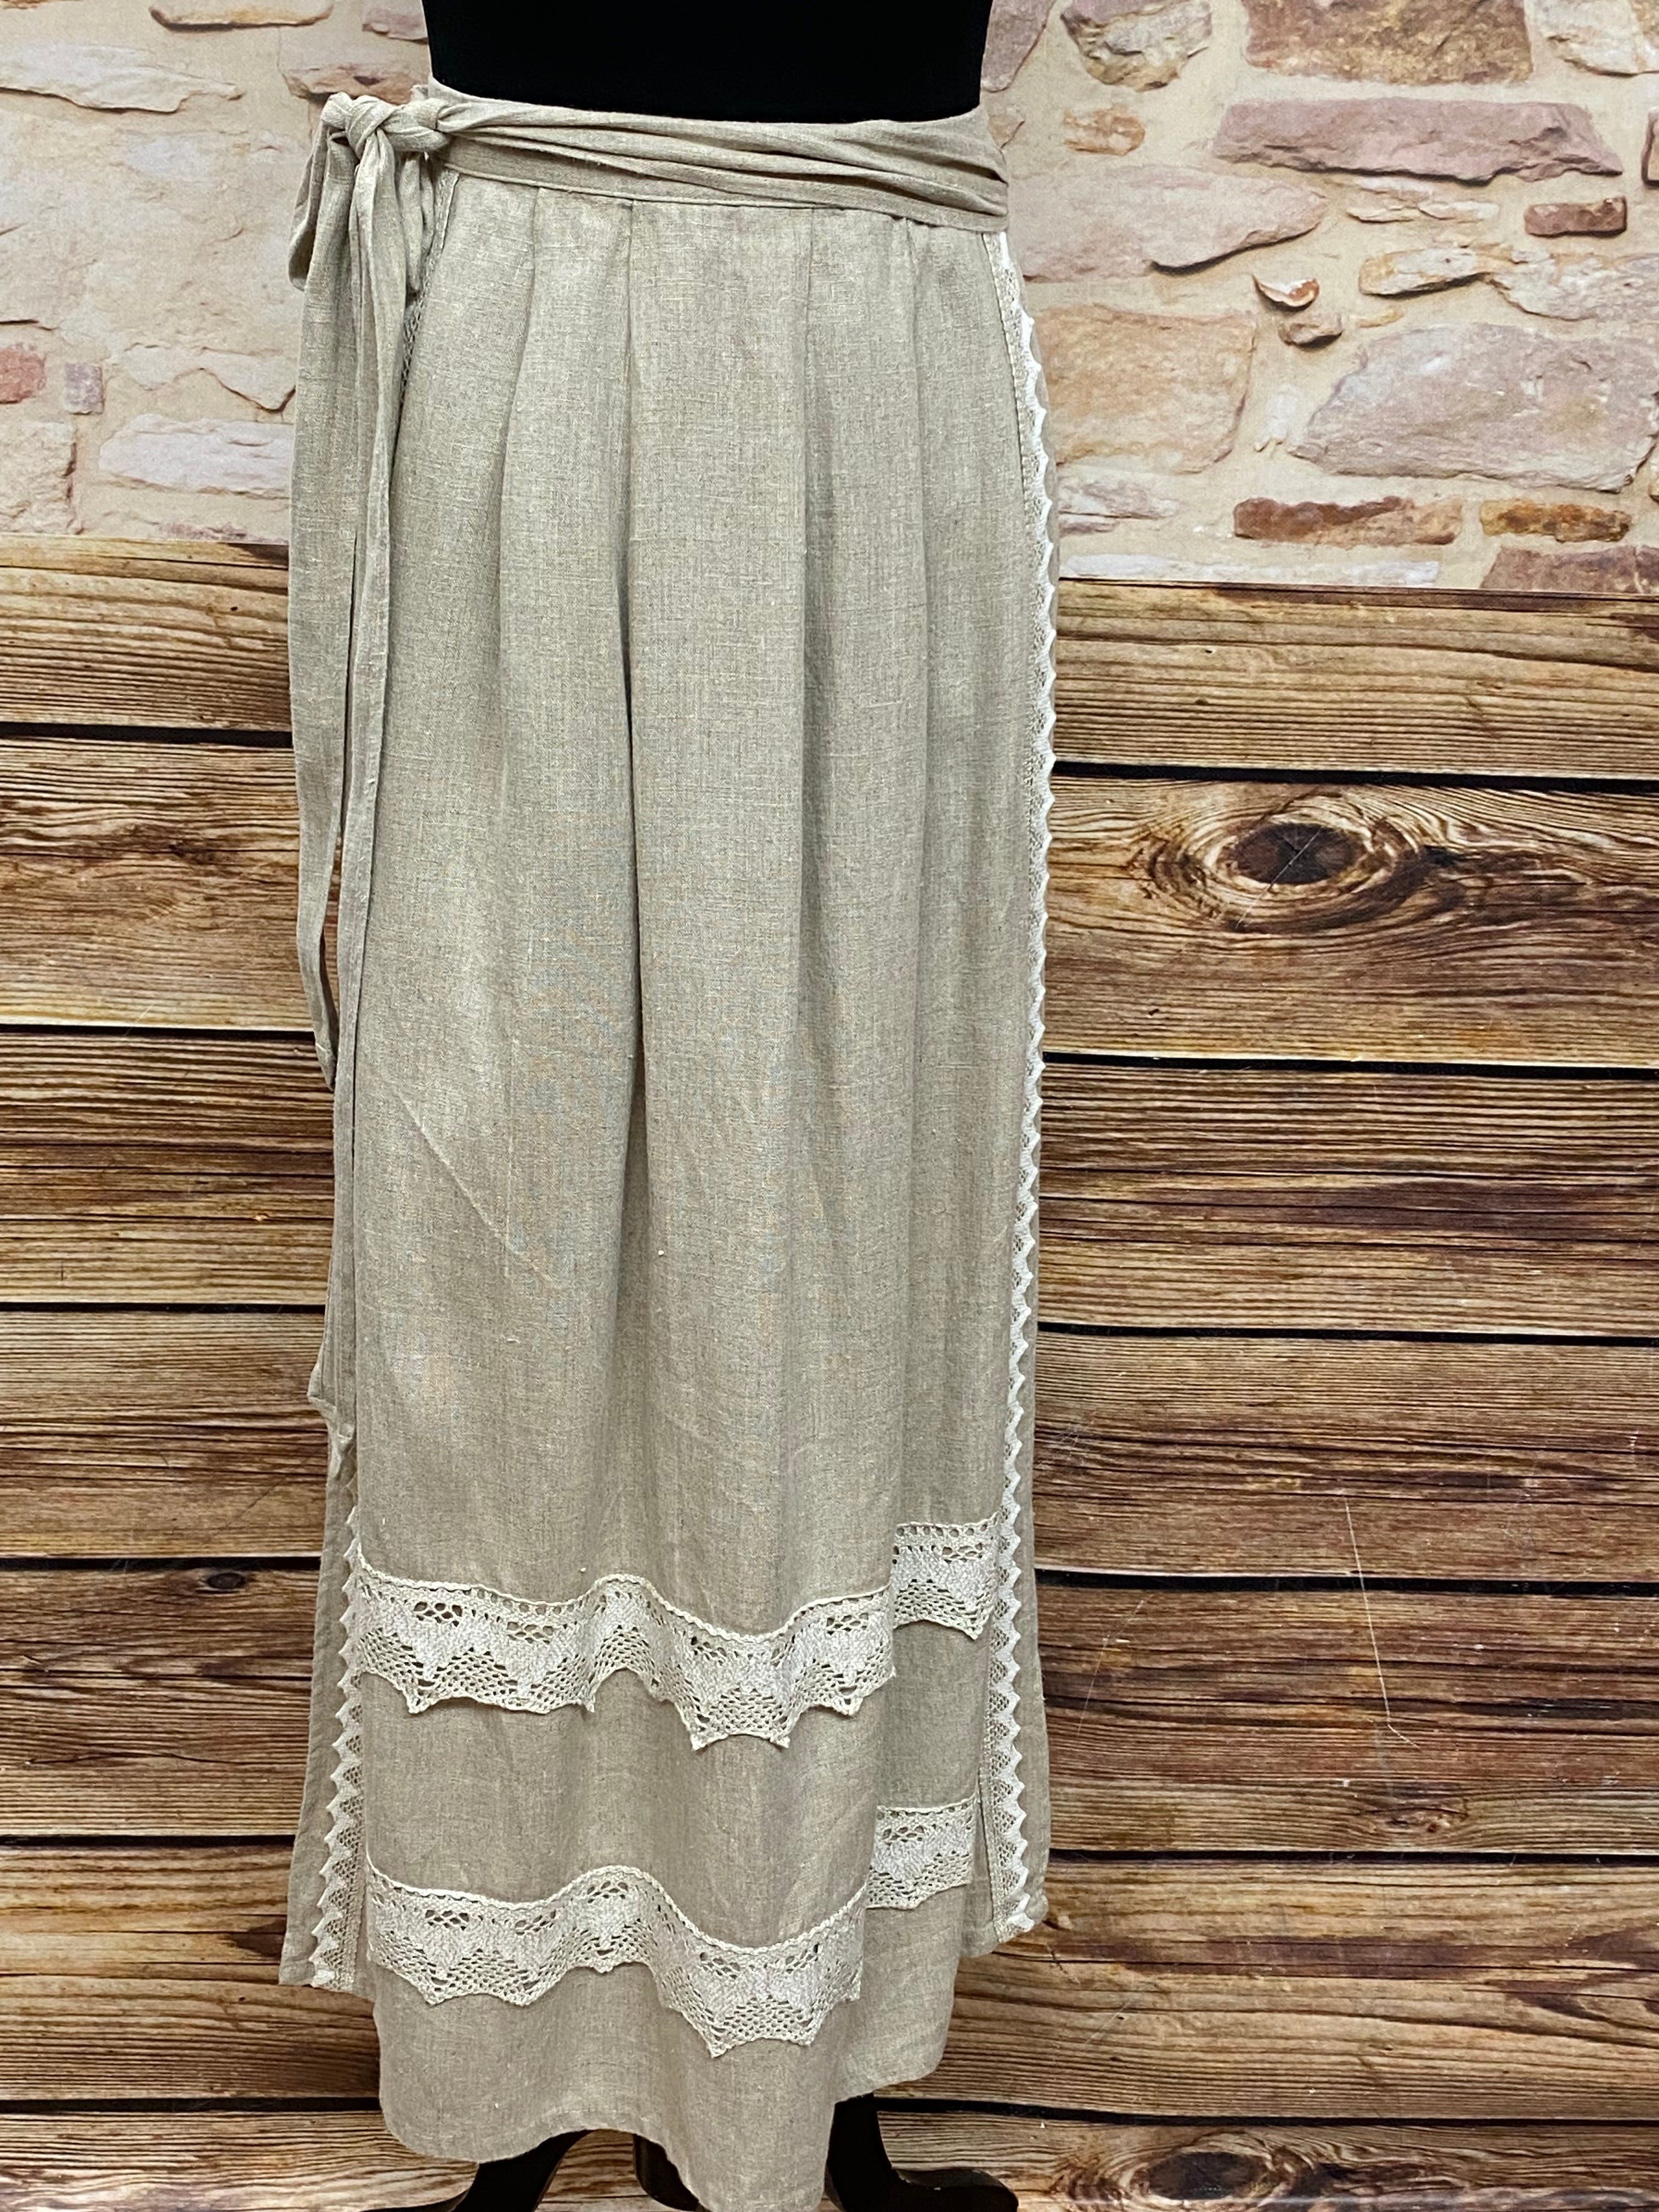 Lange Schürze  in beige für Landhauskleid Trachten Kleid Gr.36 Länge 94 cm